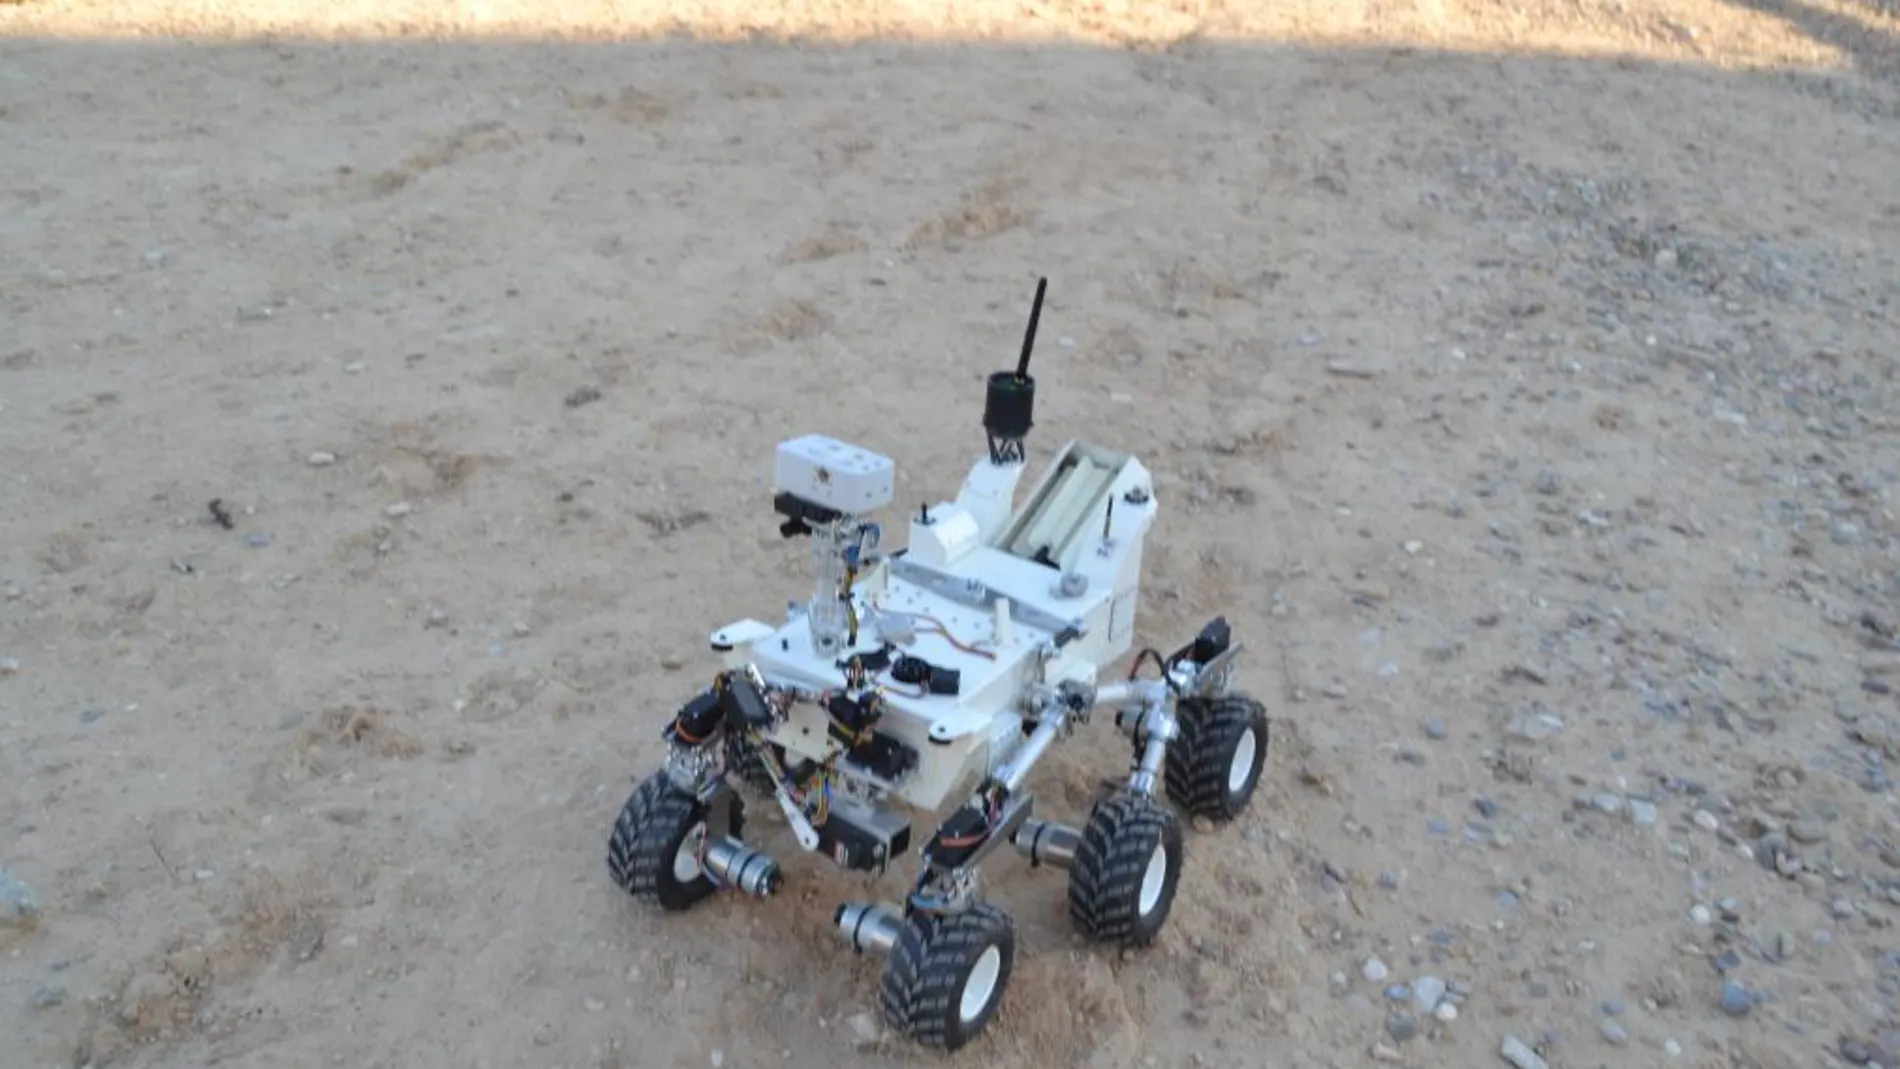 La NASA selecciona un robot creado en Aragón entre 500 proyectos del mundo